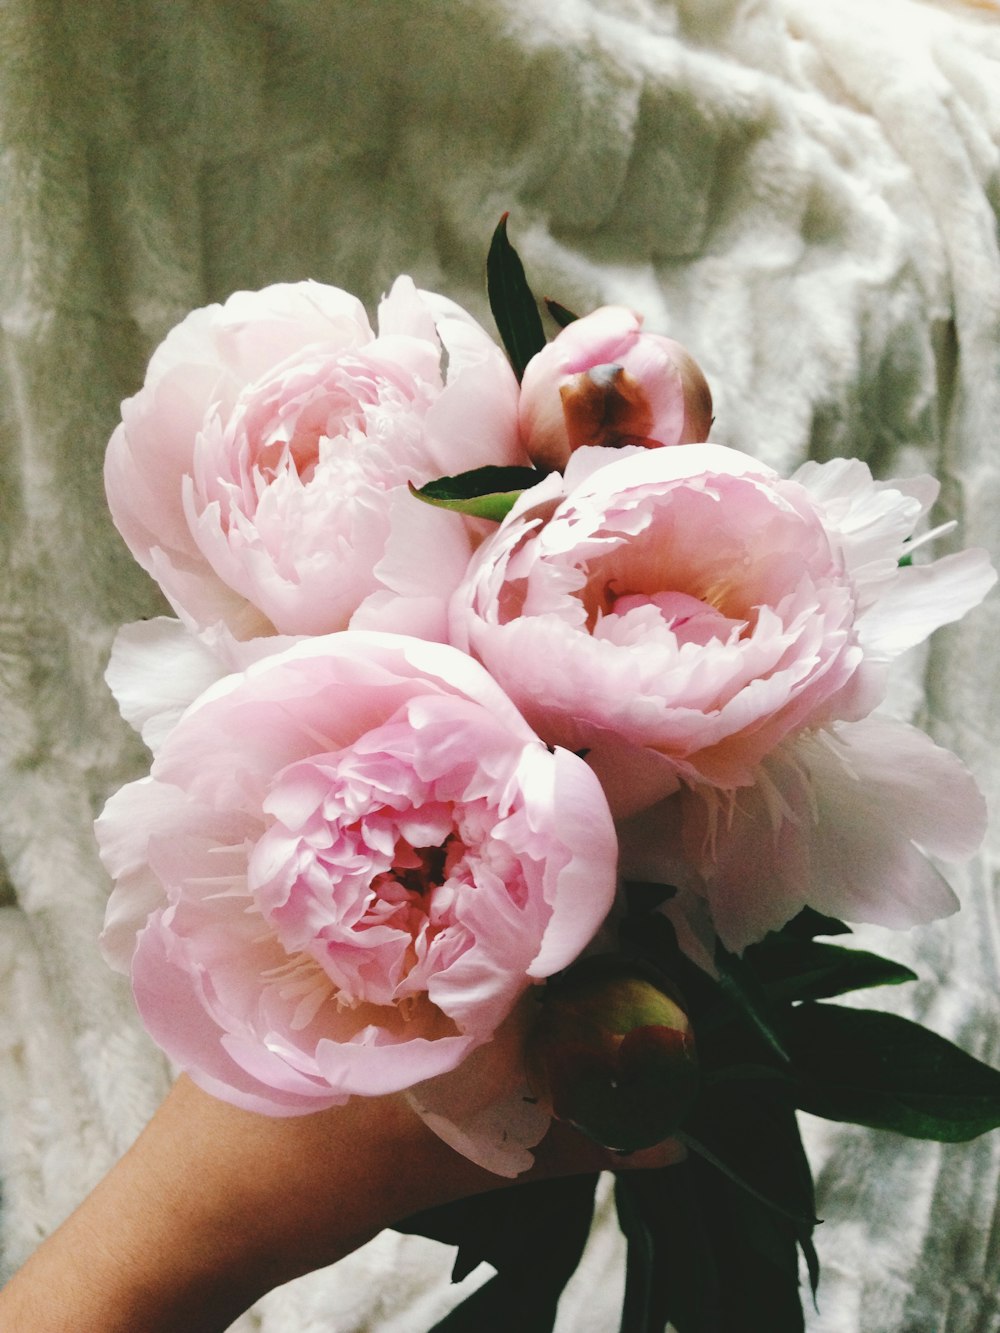 クローズアップ写真のピンクのバラ